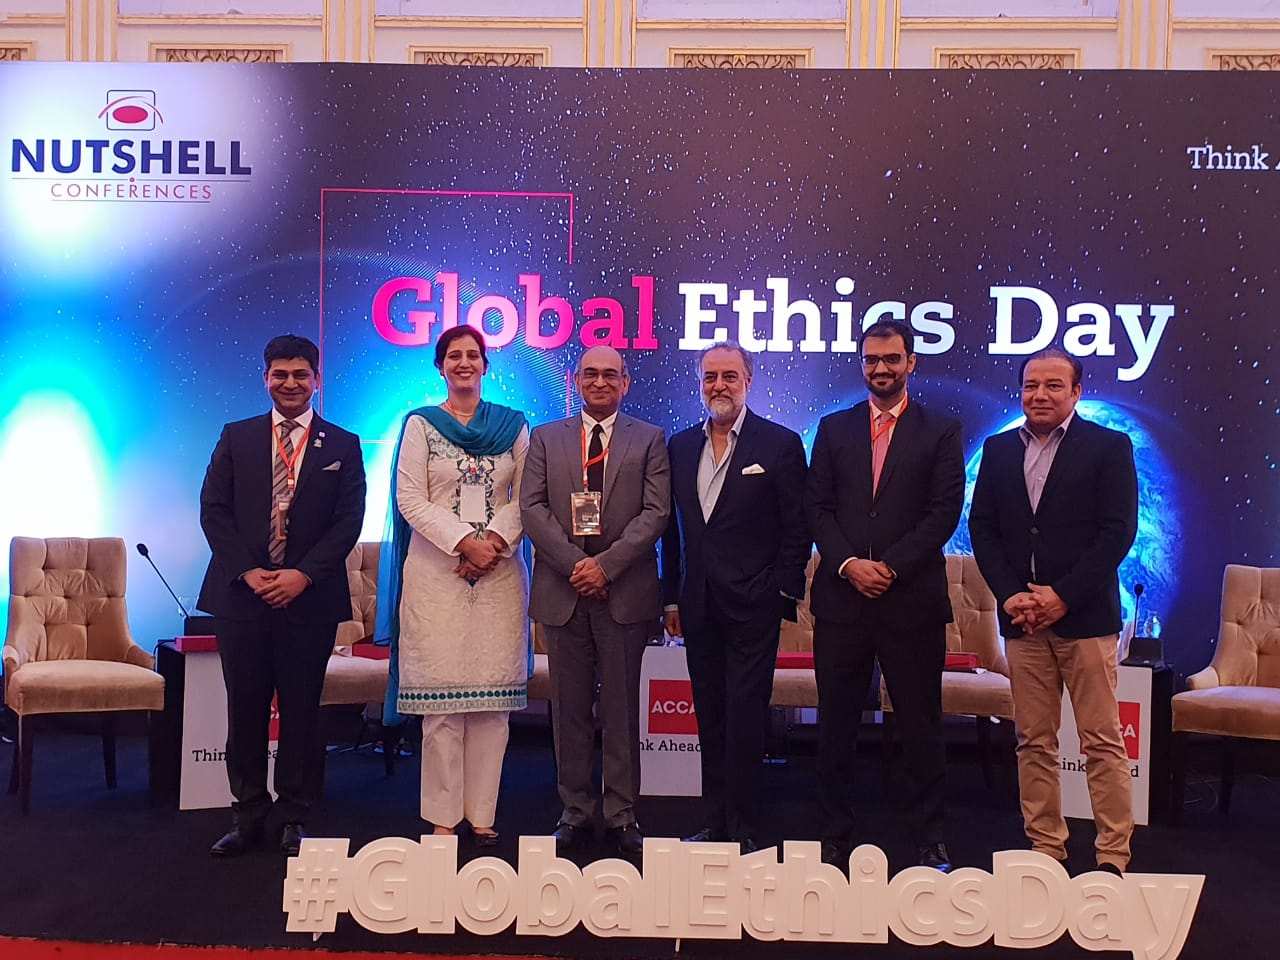 Global Ethics day